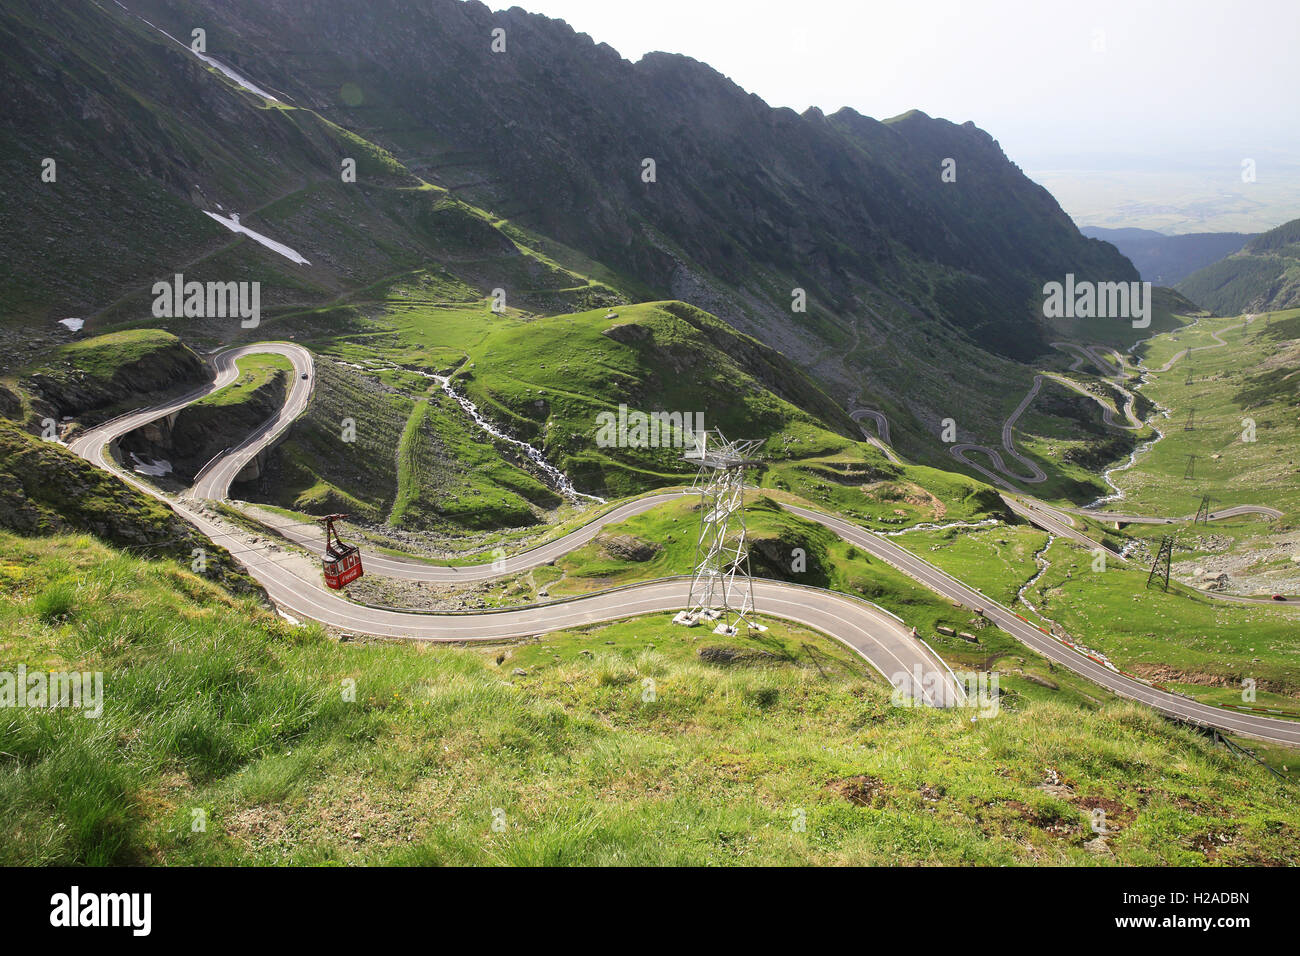 The spectacular Transfagarasan Highway in the Fagaras Mountains in Transylvania, Romania, east Europe Stock Photo